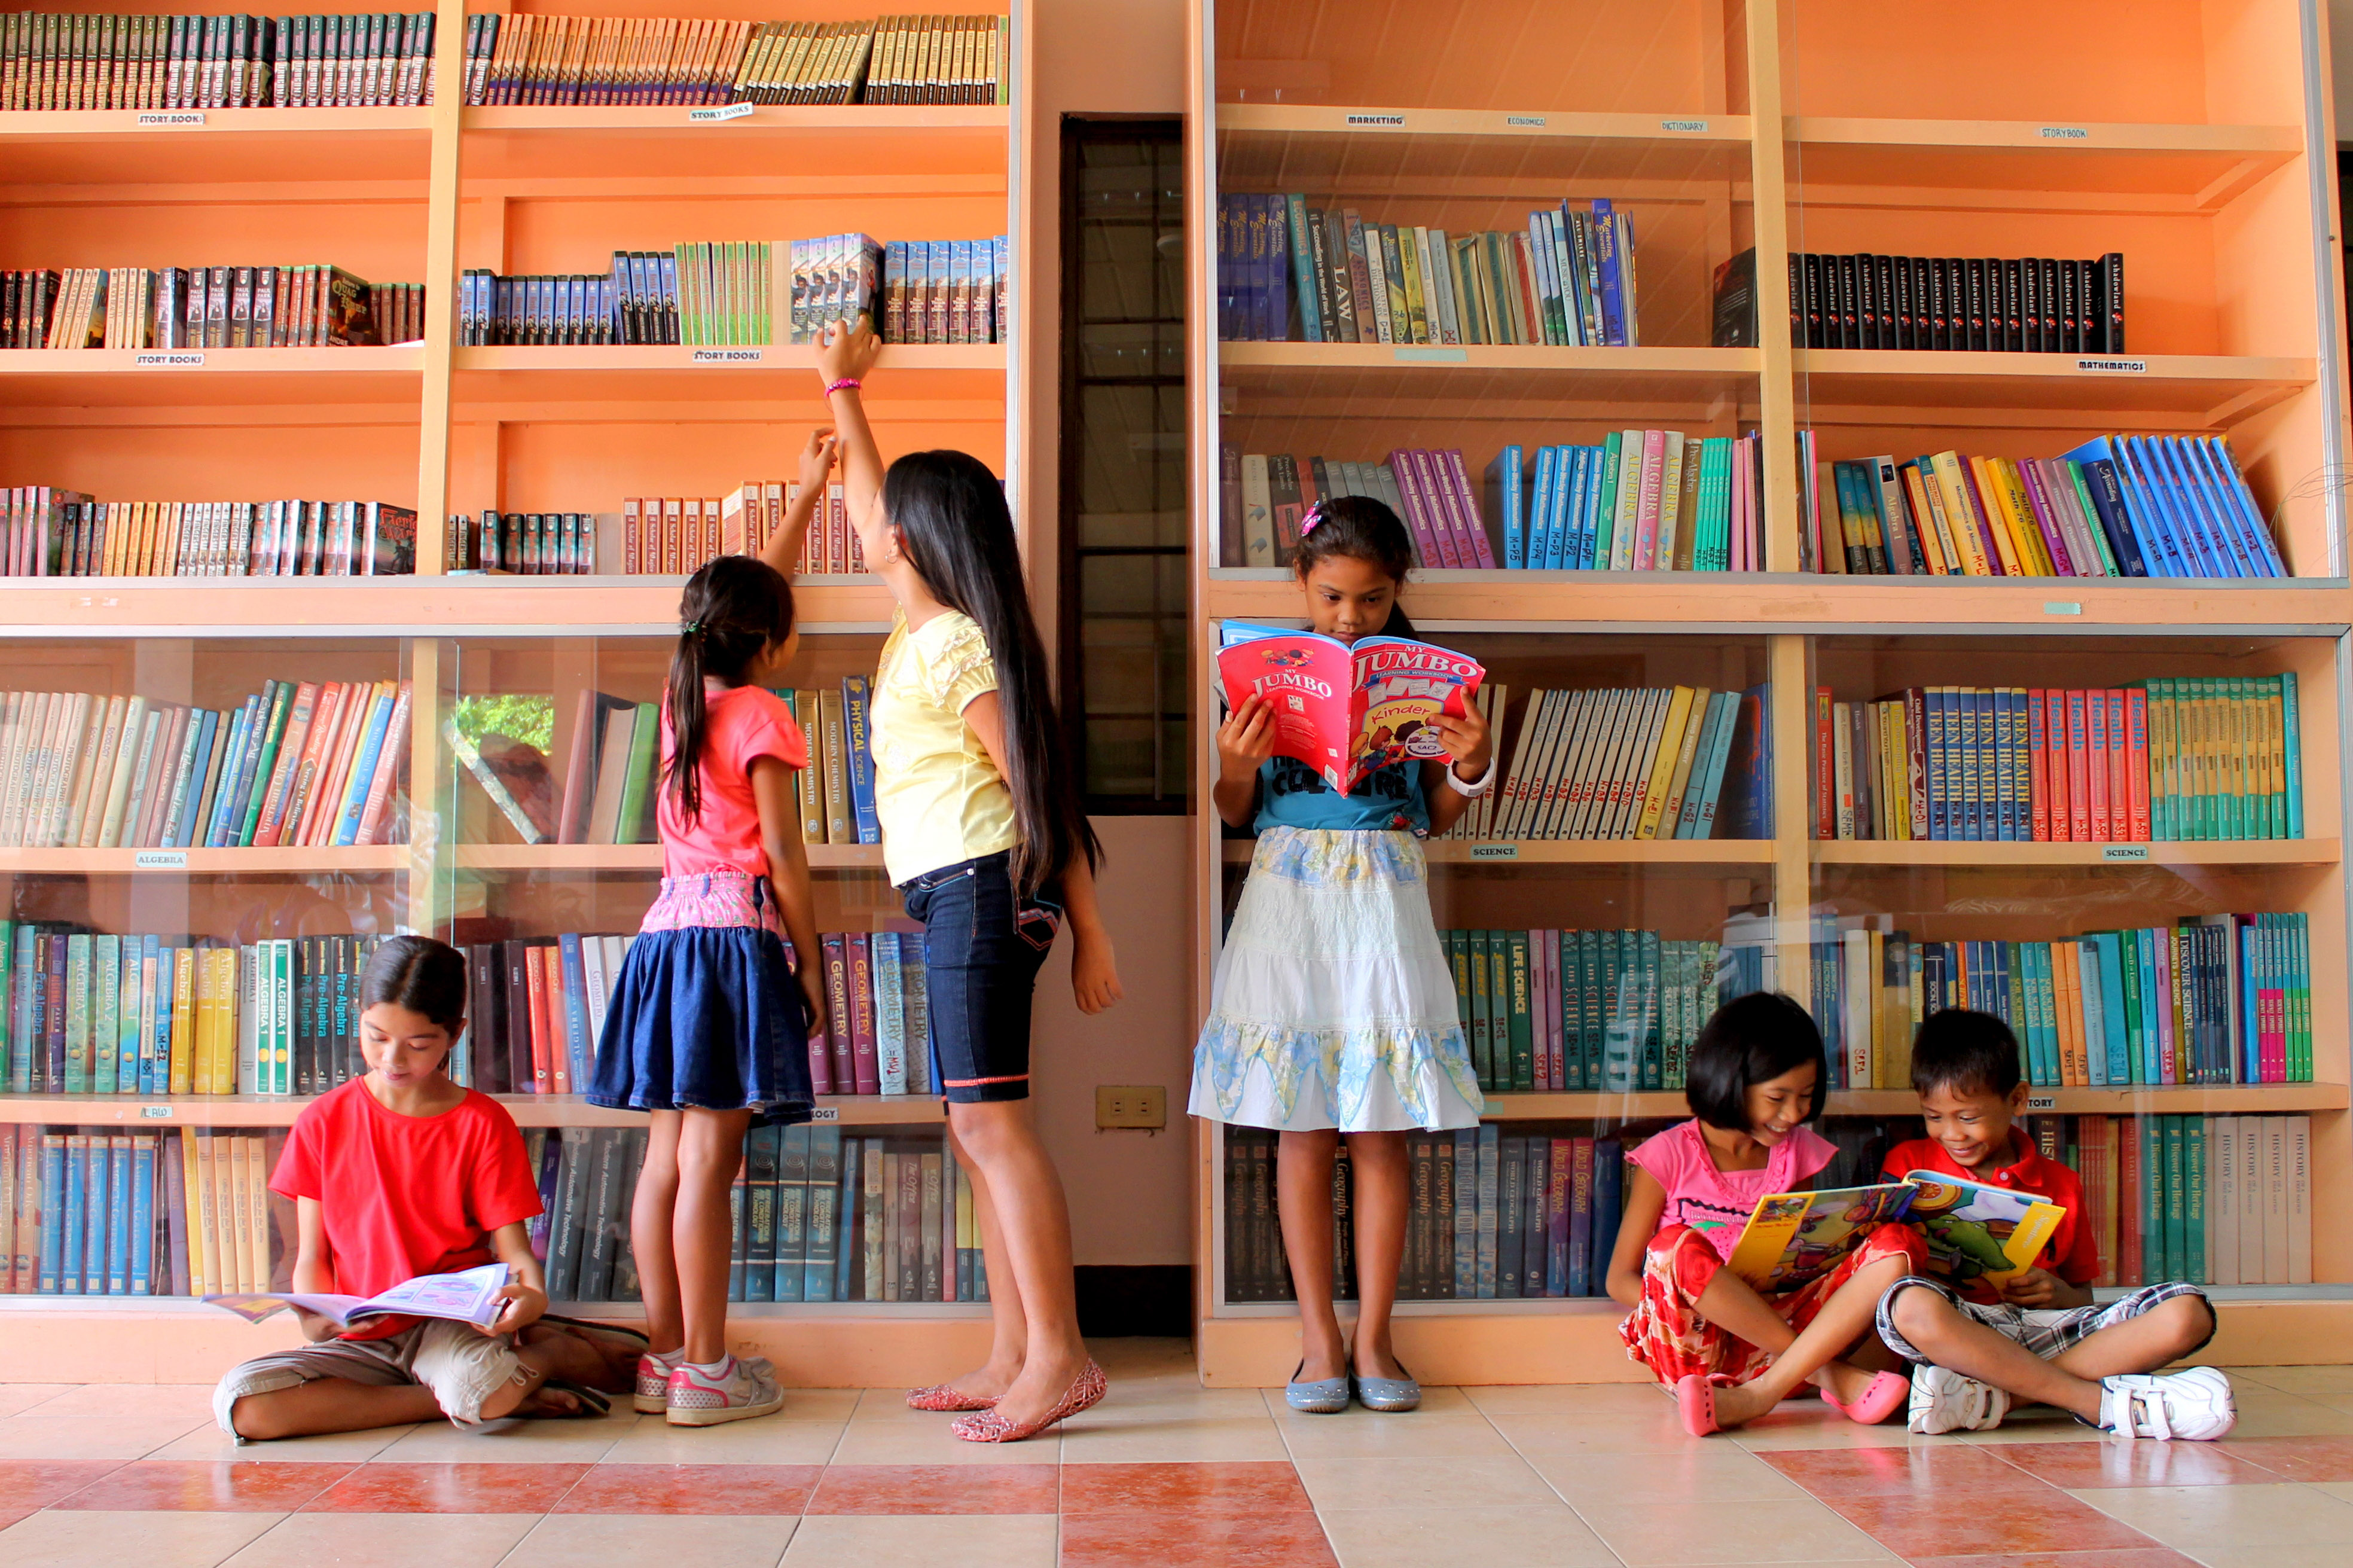 Kids library. Фотосессия в библиотеке дети. Дети в библиотеке. Здание библиотеки для детей. Детские библиотеки.